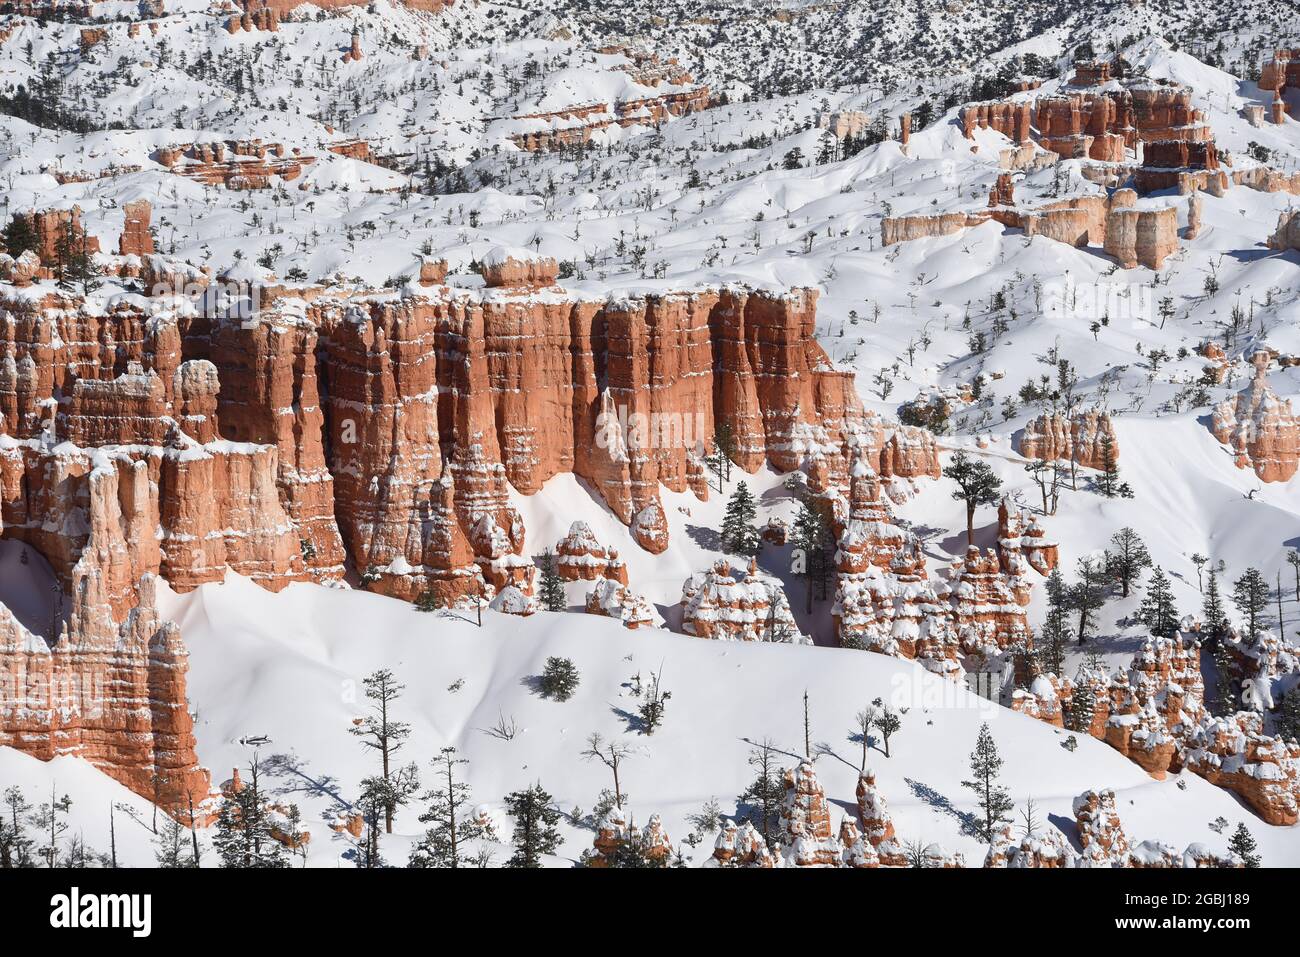 Panorama des Hoodoos rouges enneigés dans les merveilles hivernales du parc national de Bryce Canyon, Utah, États-Unis. Notez le grand format plein format. Banque D'Images